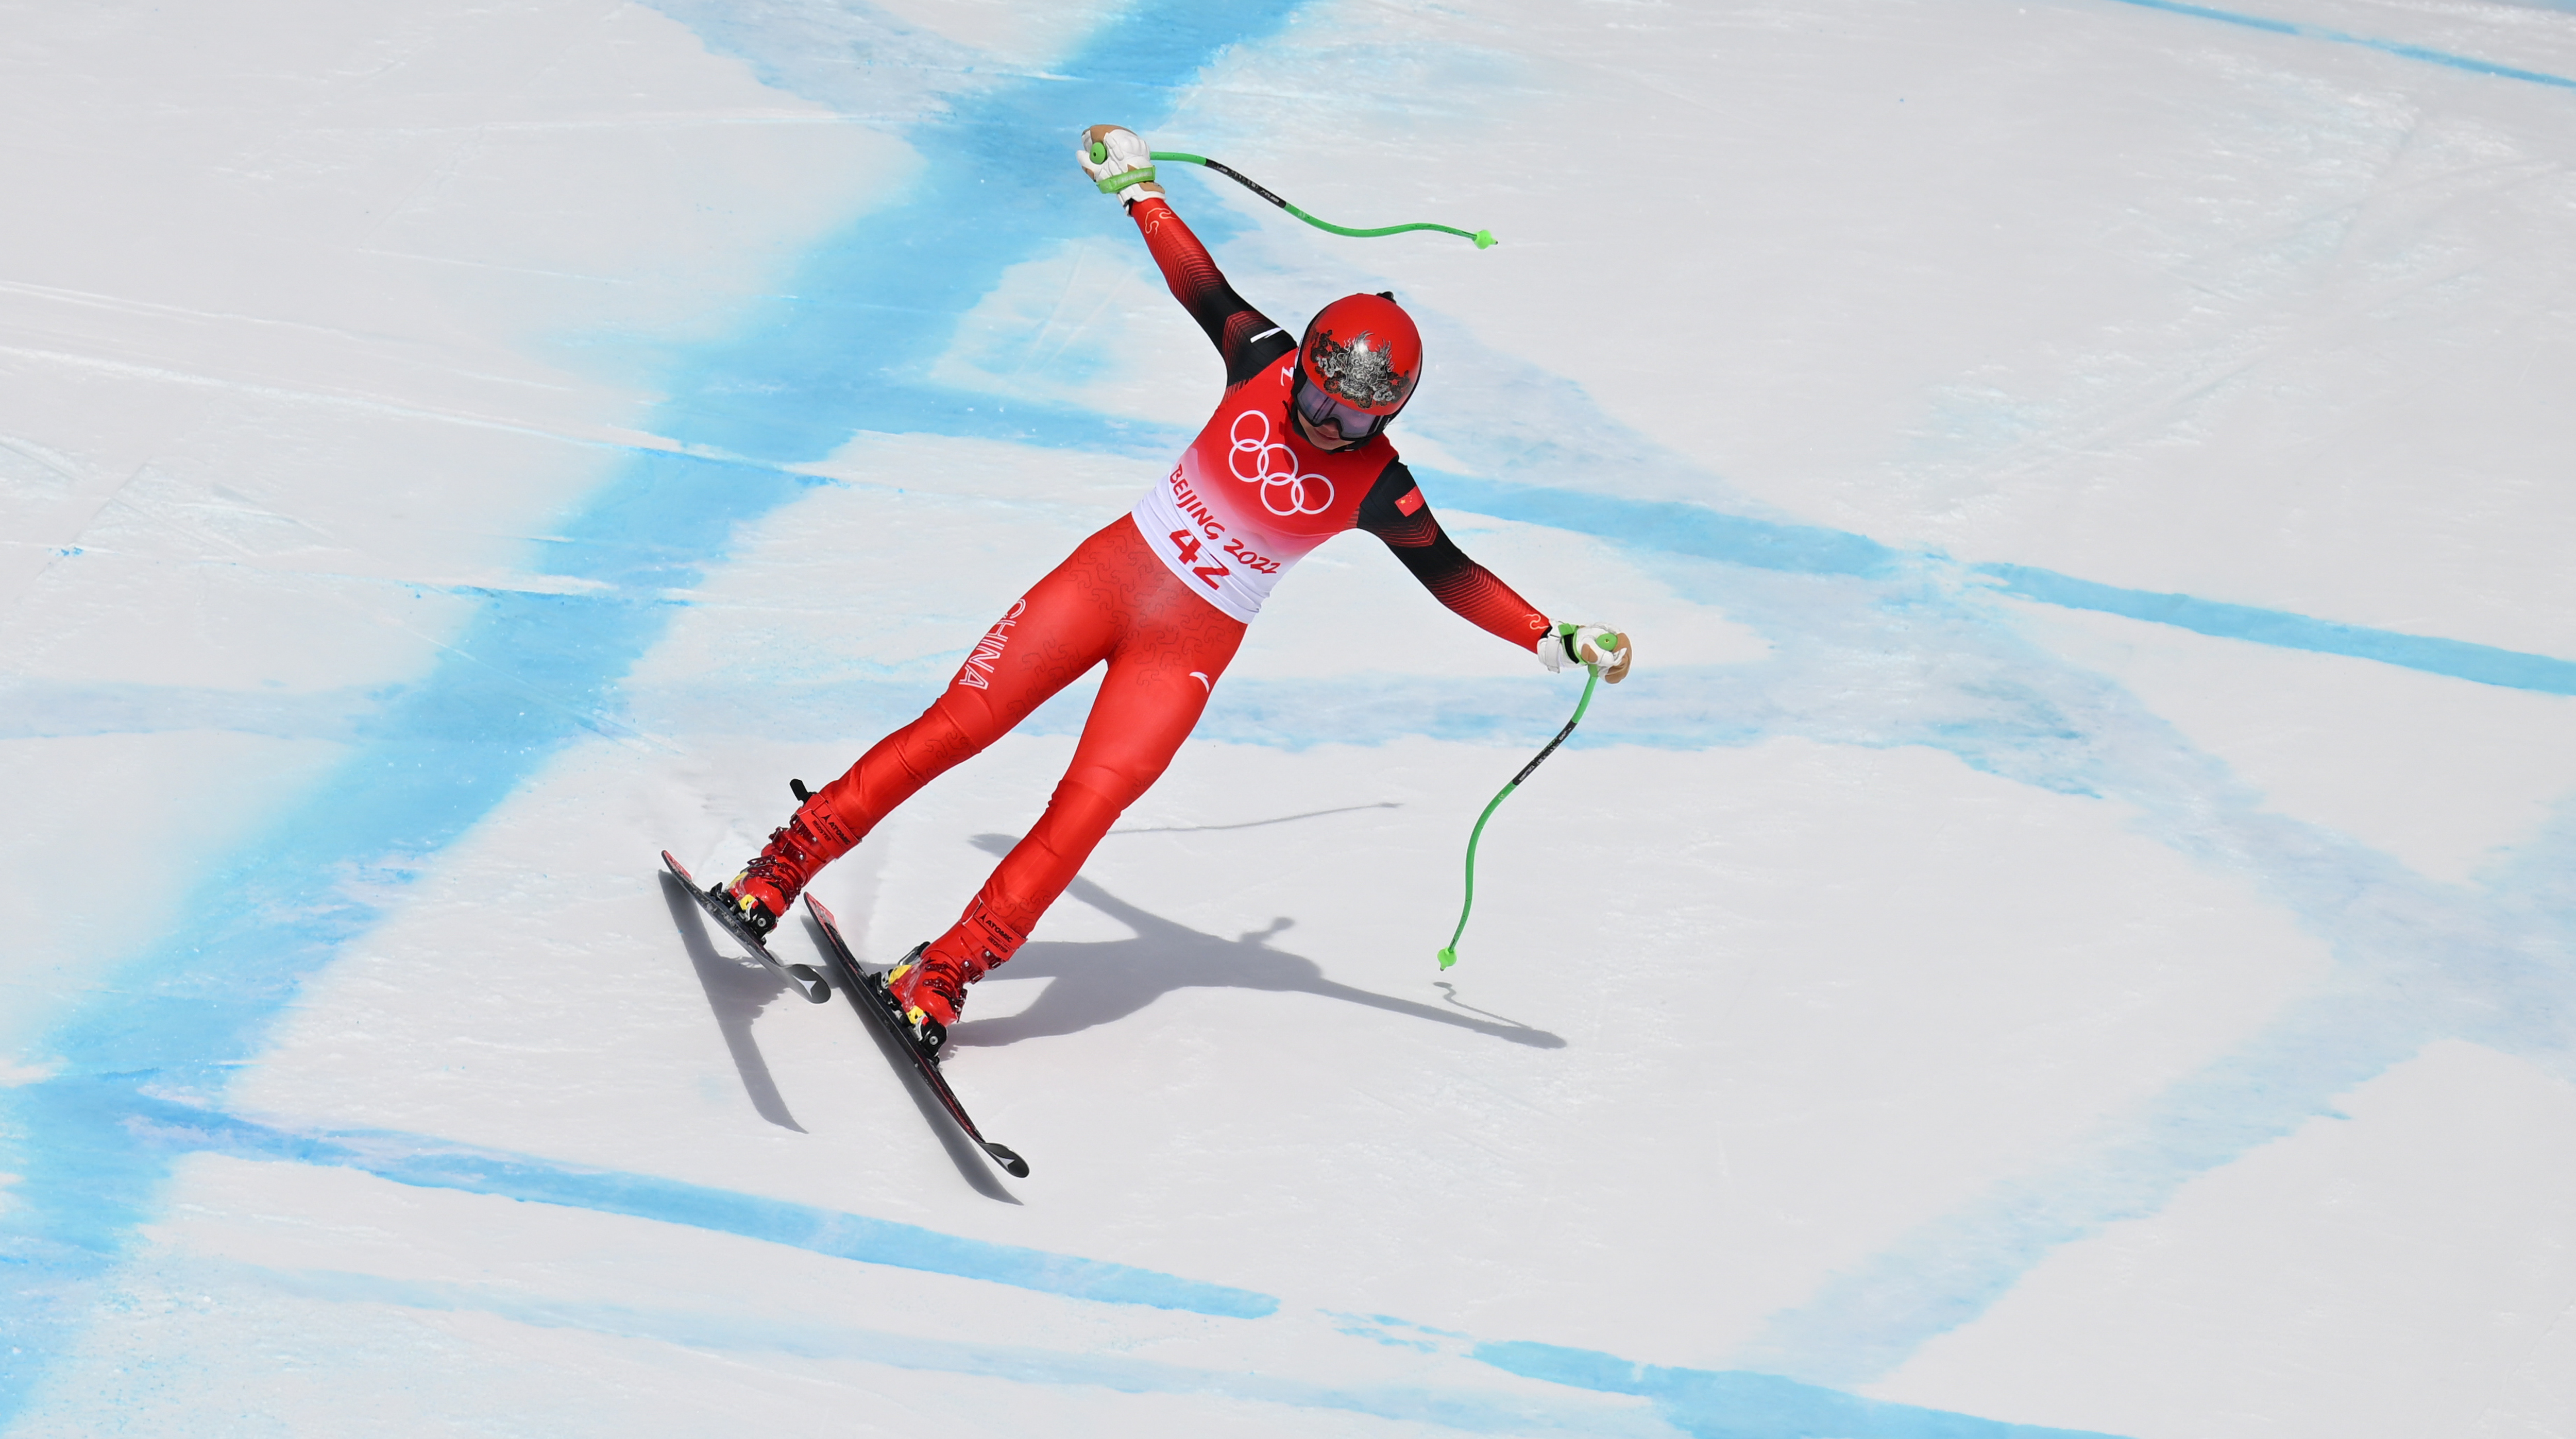 滑雪运动员影子图片